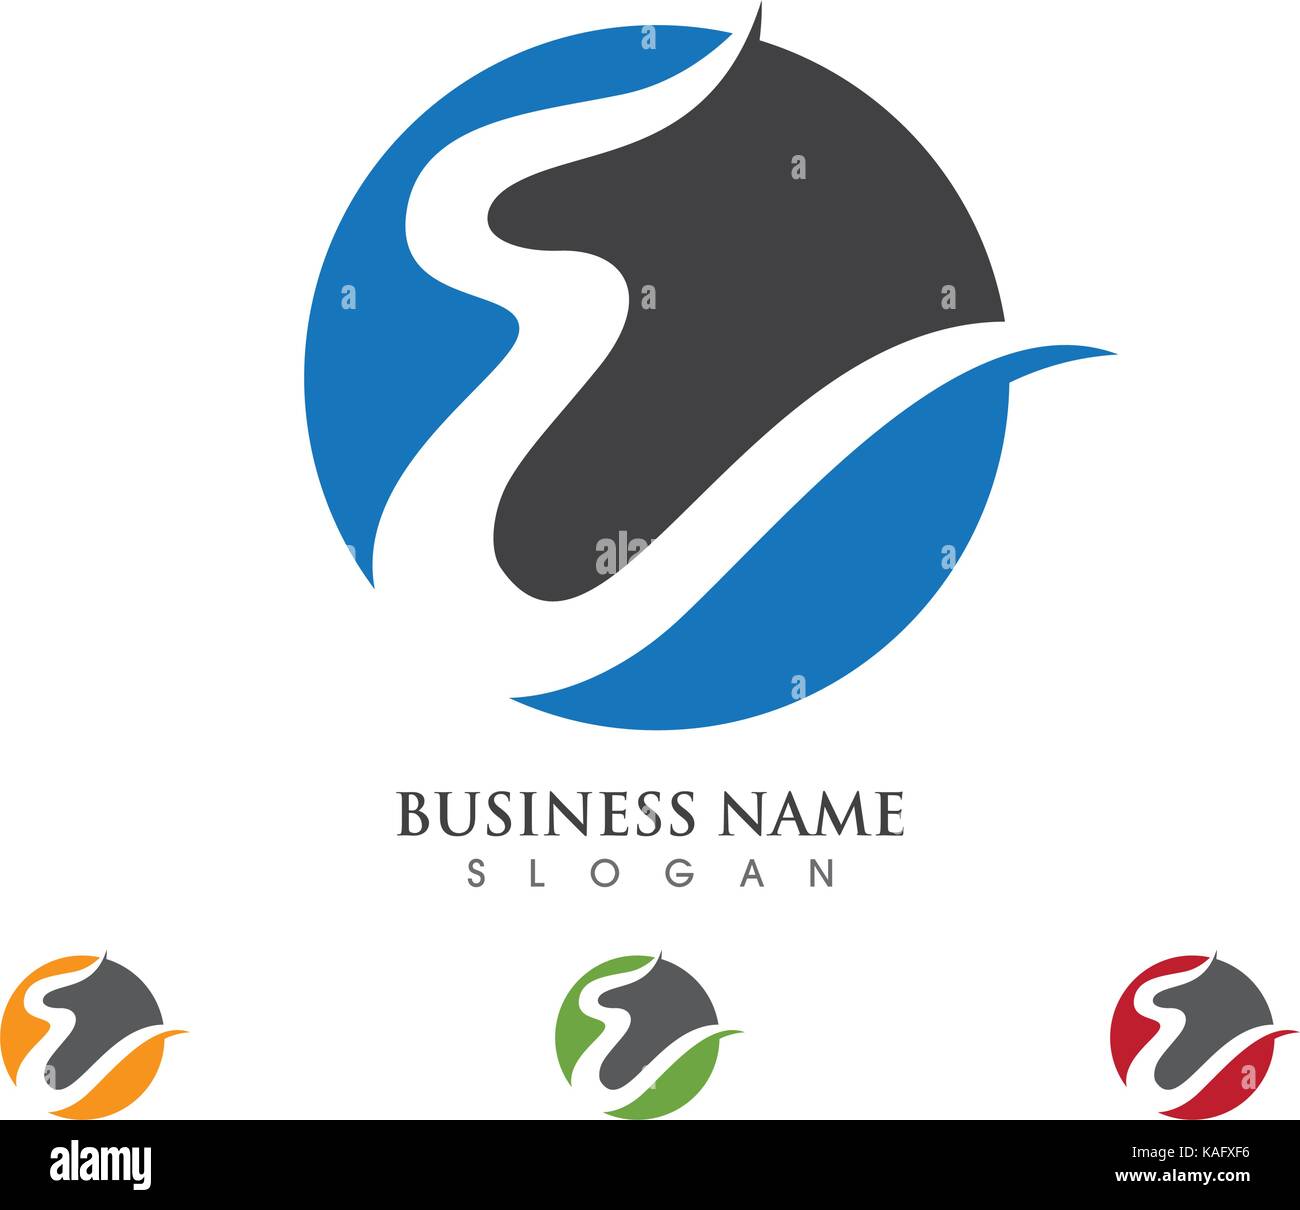 E Letter Logo Business Template Vector icon Stock Vector